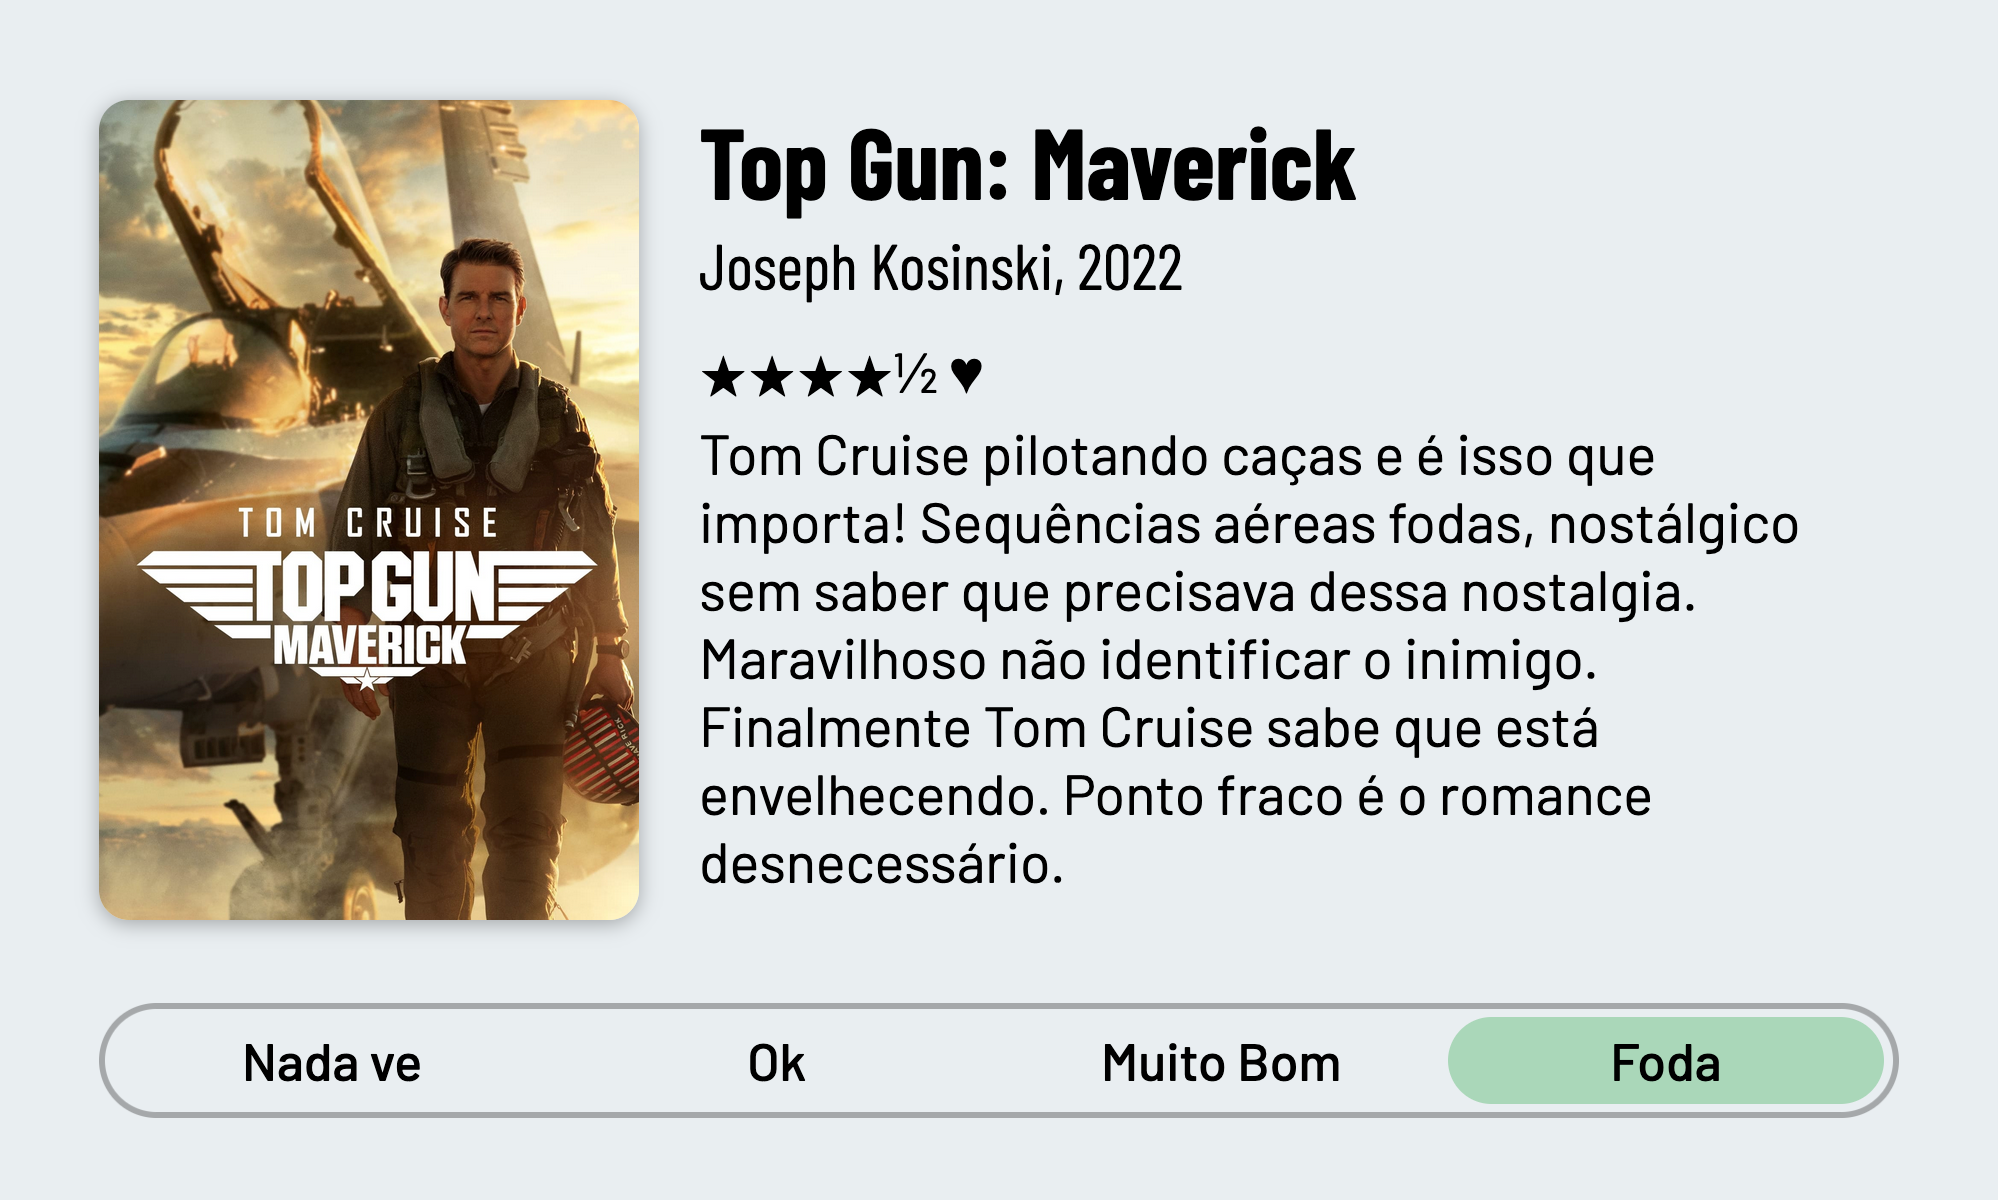 QuickReview do filme "Top Gun: Maverick" de Joseph Kosinski com 4 estrelas e meia que diz: "Tom Cruise pilotando caças e é isso que importa! Sequências aéreas fodas, nostálgico sem saber que precisava dessa nostalgia. Maravilhoso não identificar o inimigo. Finalmente Tom Cruise sabe que está envelhecendo. Ponto fraco é só o romance desnecessário."